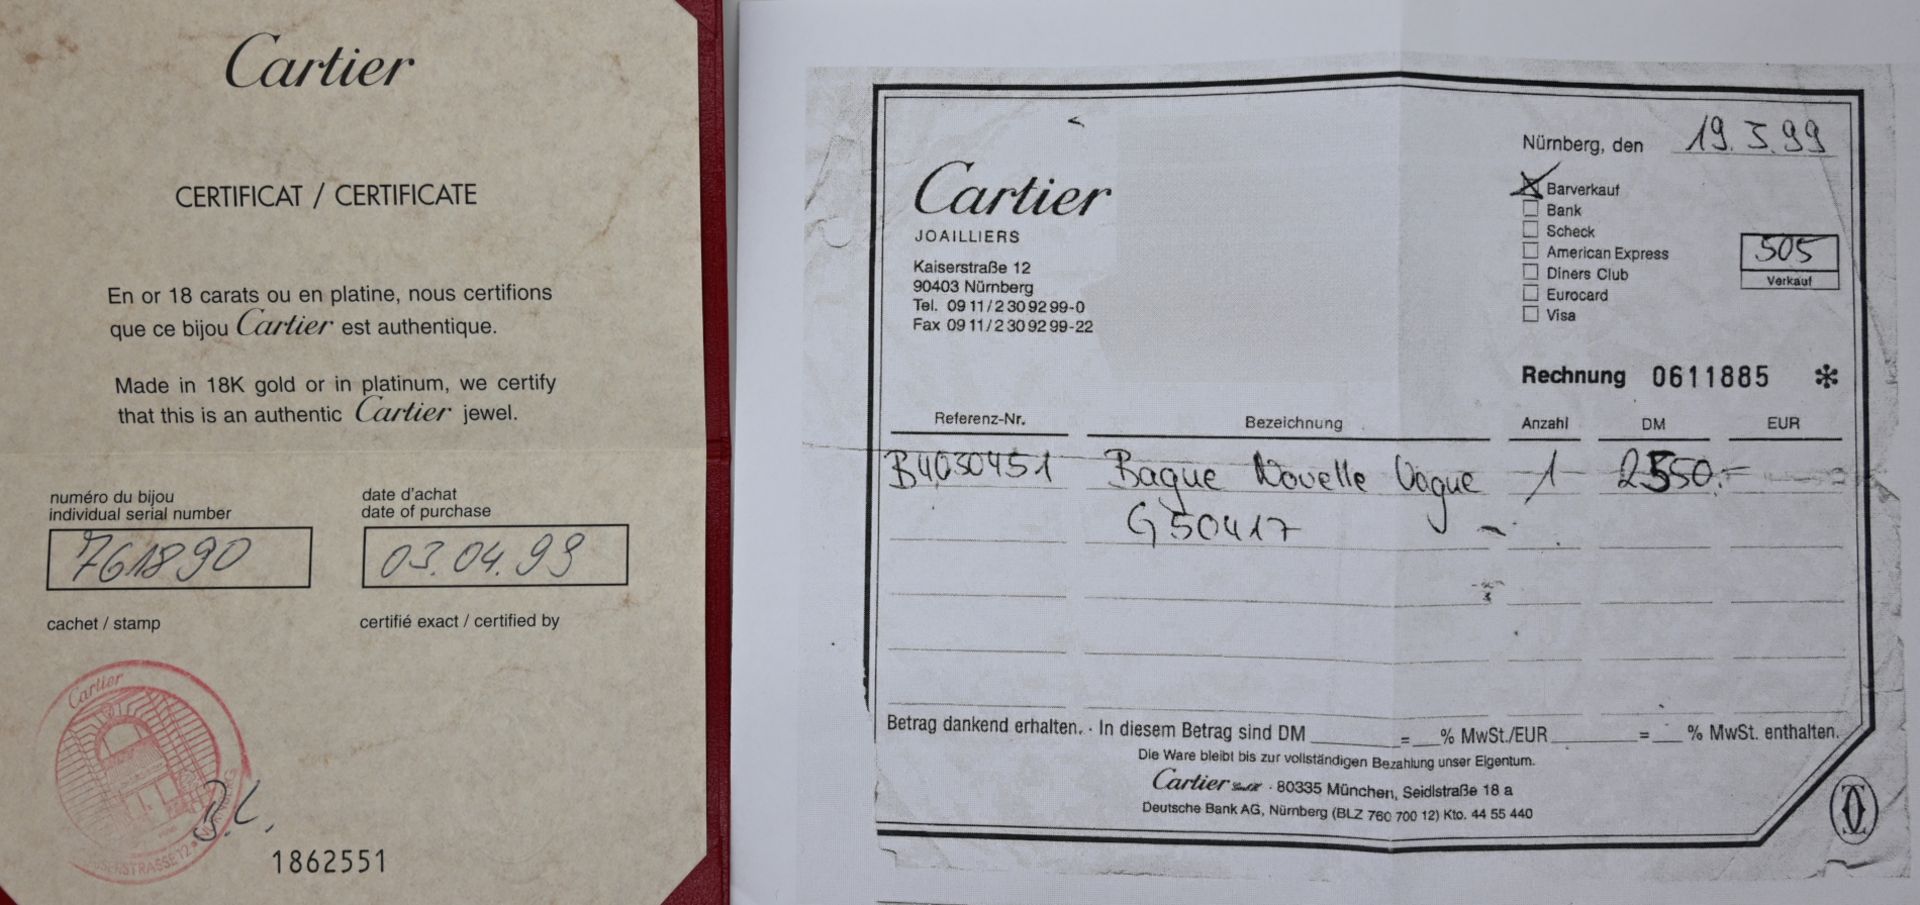 1 Damenring CARTIER GG 18ct., mit Perle (D. ca. 0,8cm), mit Rechnungskopie: gekauft 1999 für 2.550 - Bild 3 aus 3